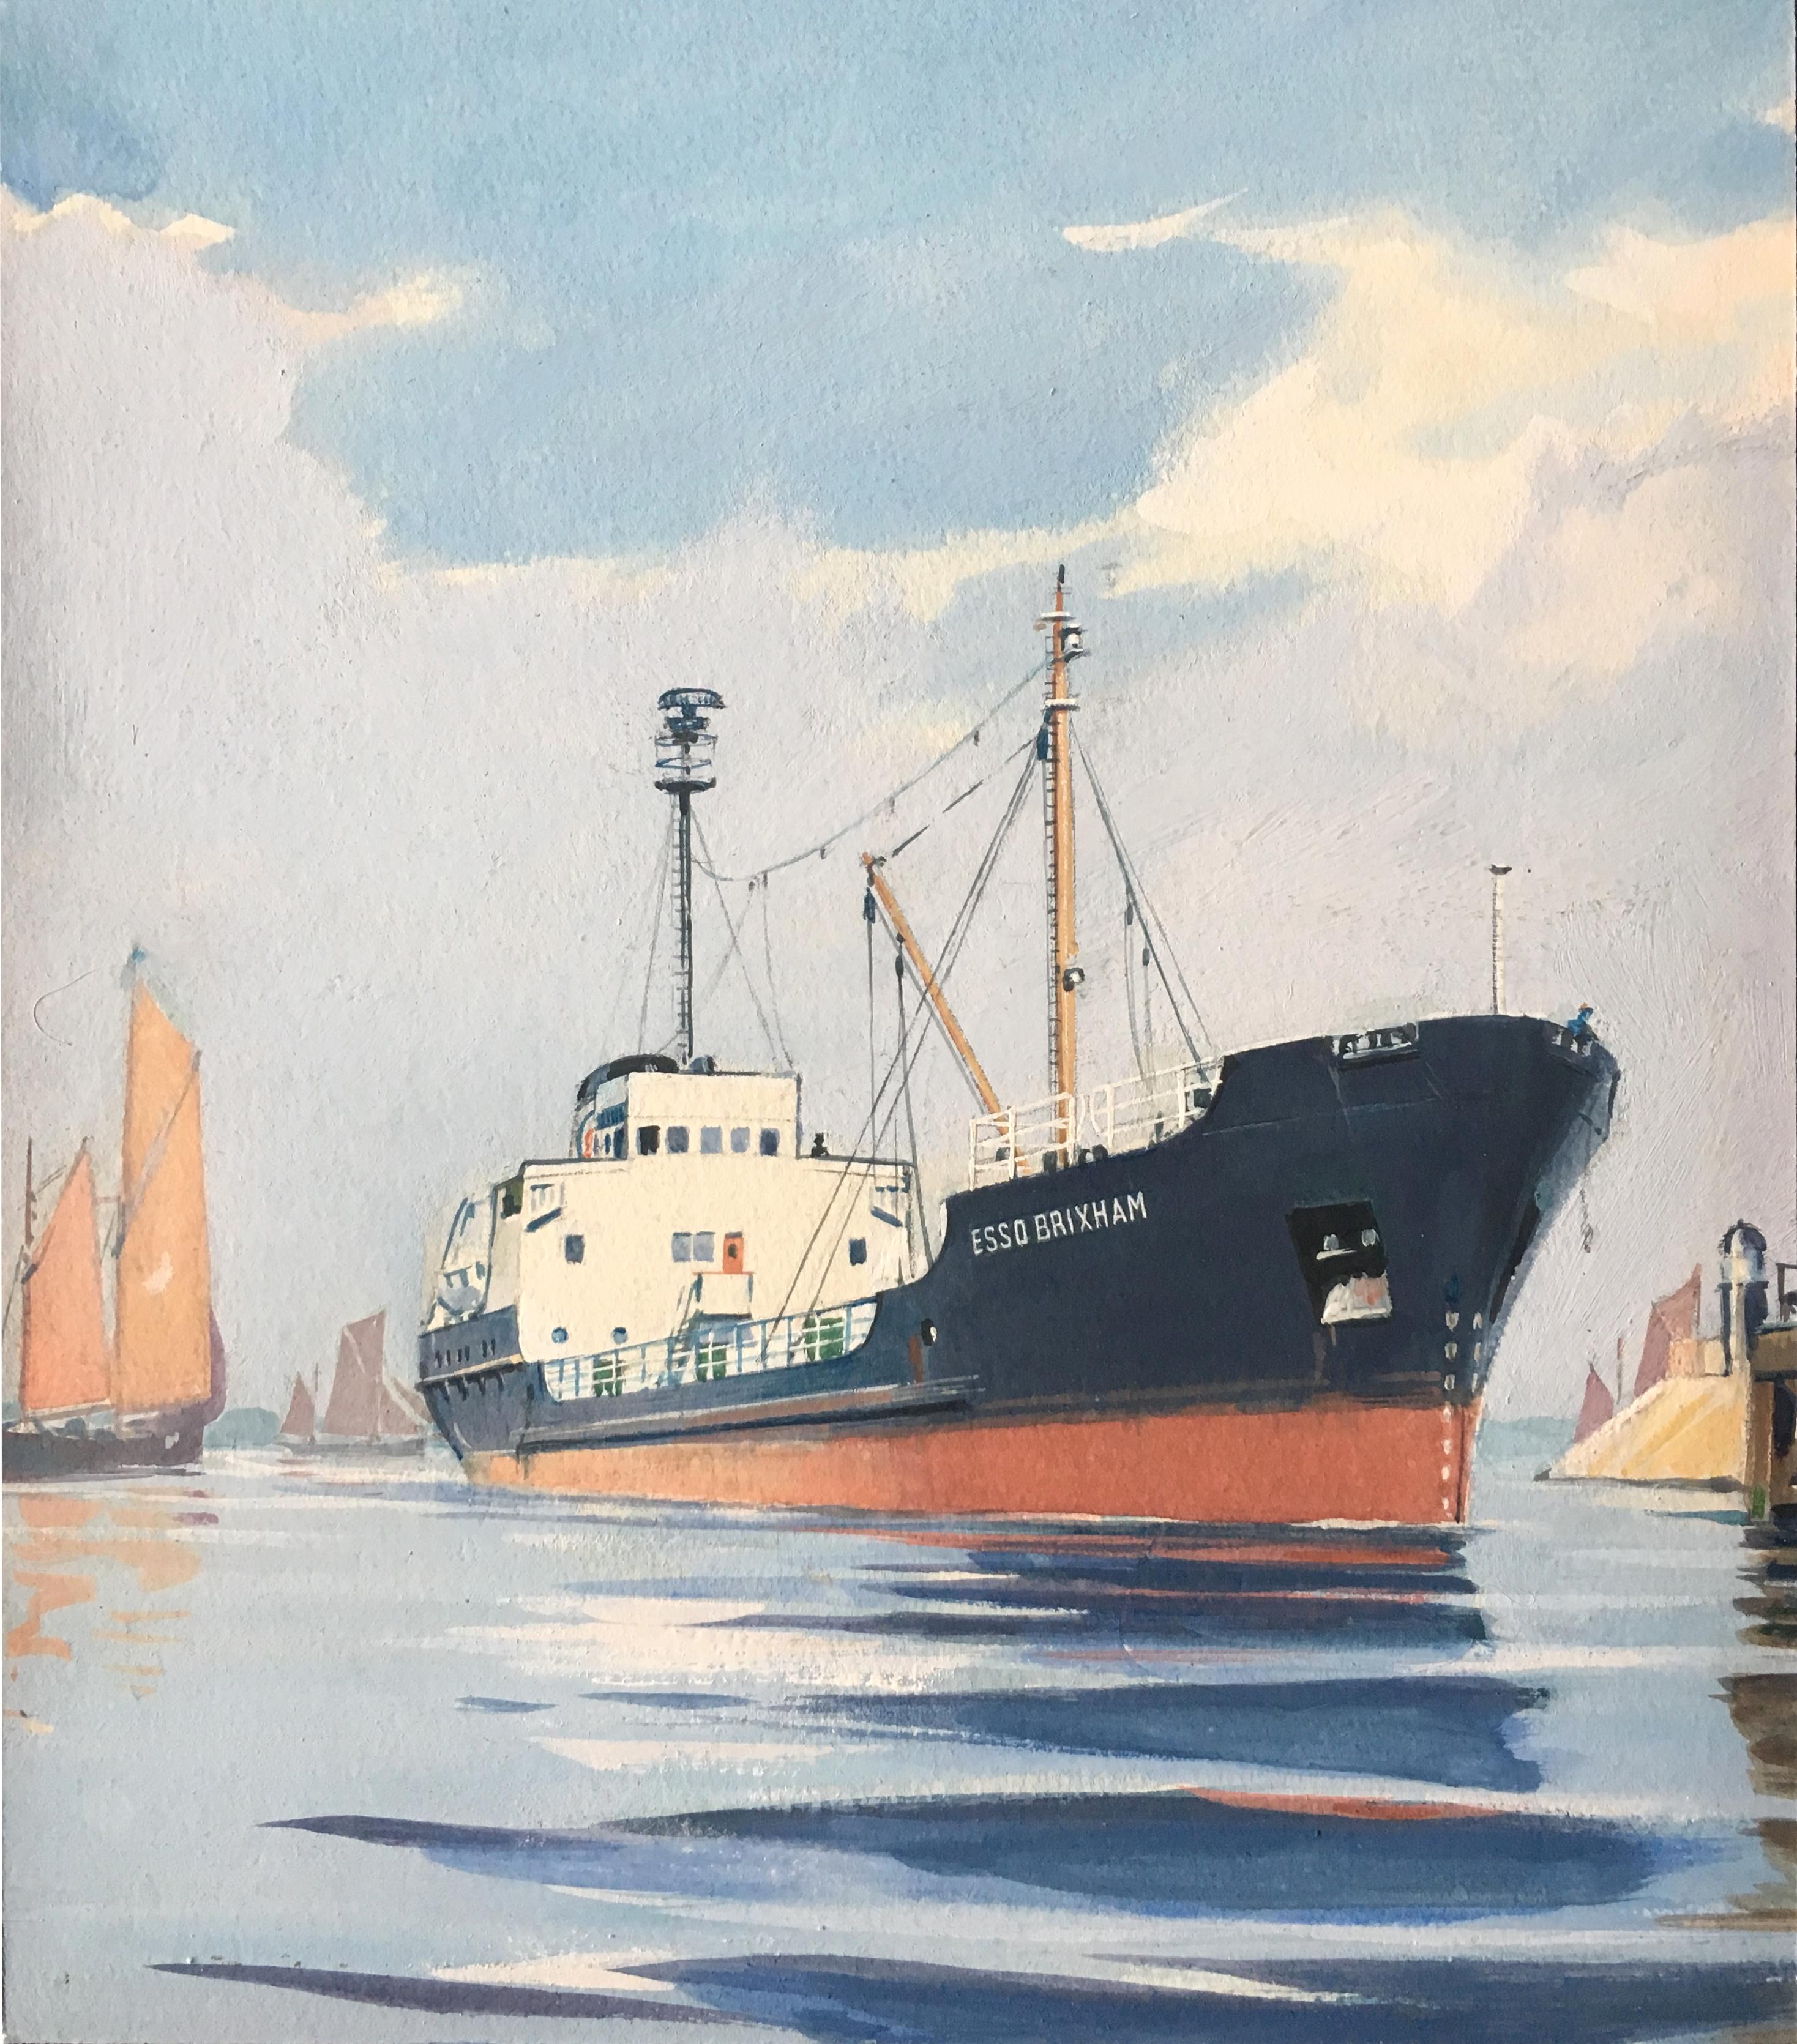 oil tanker painting